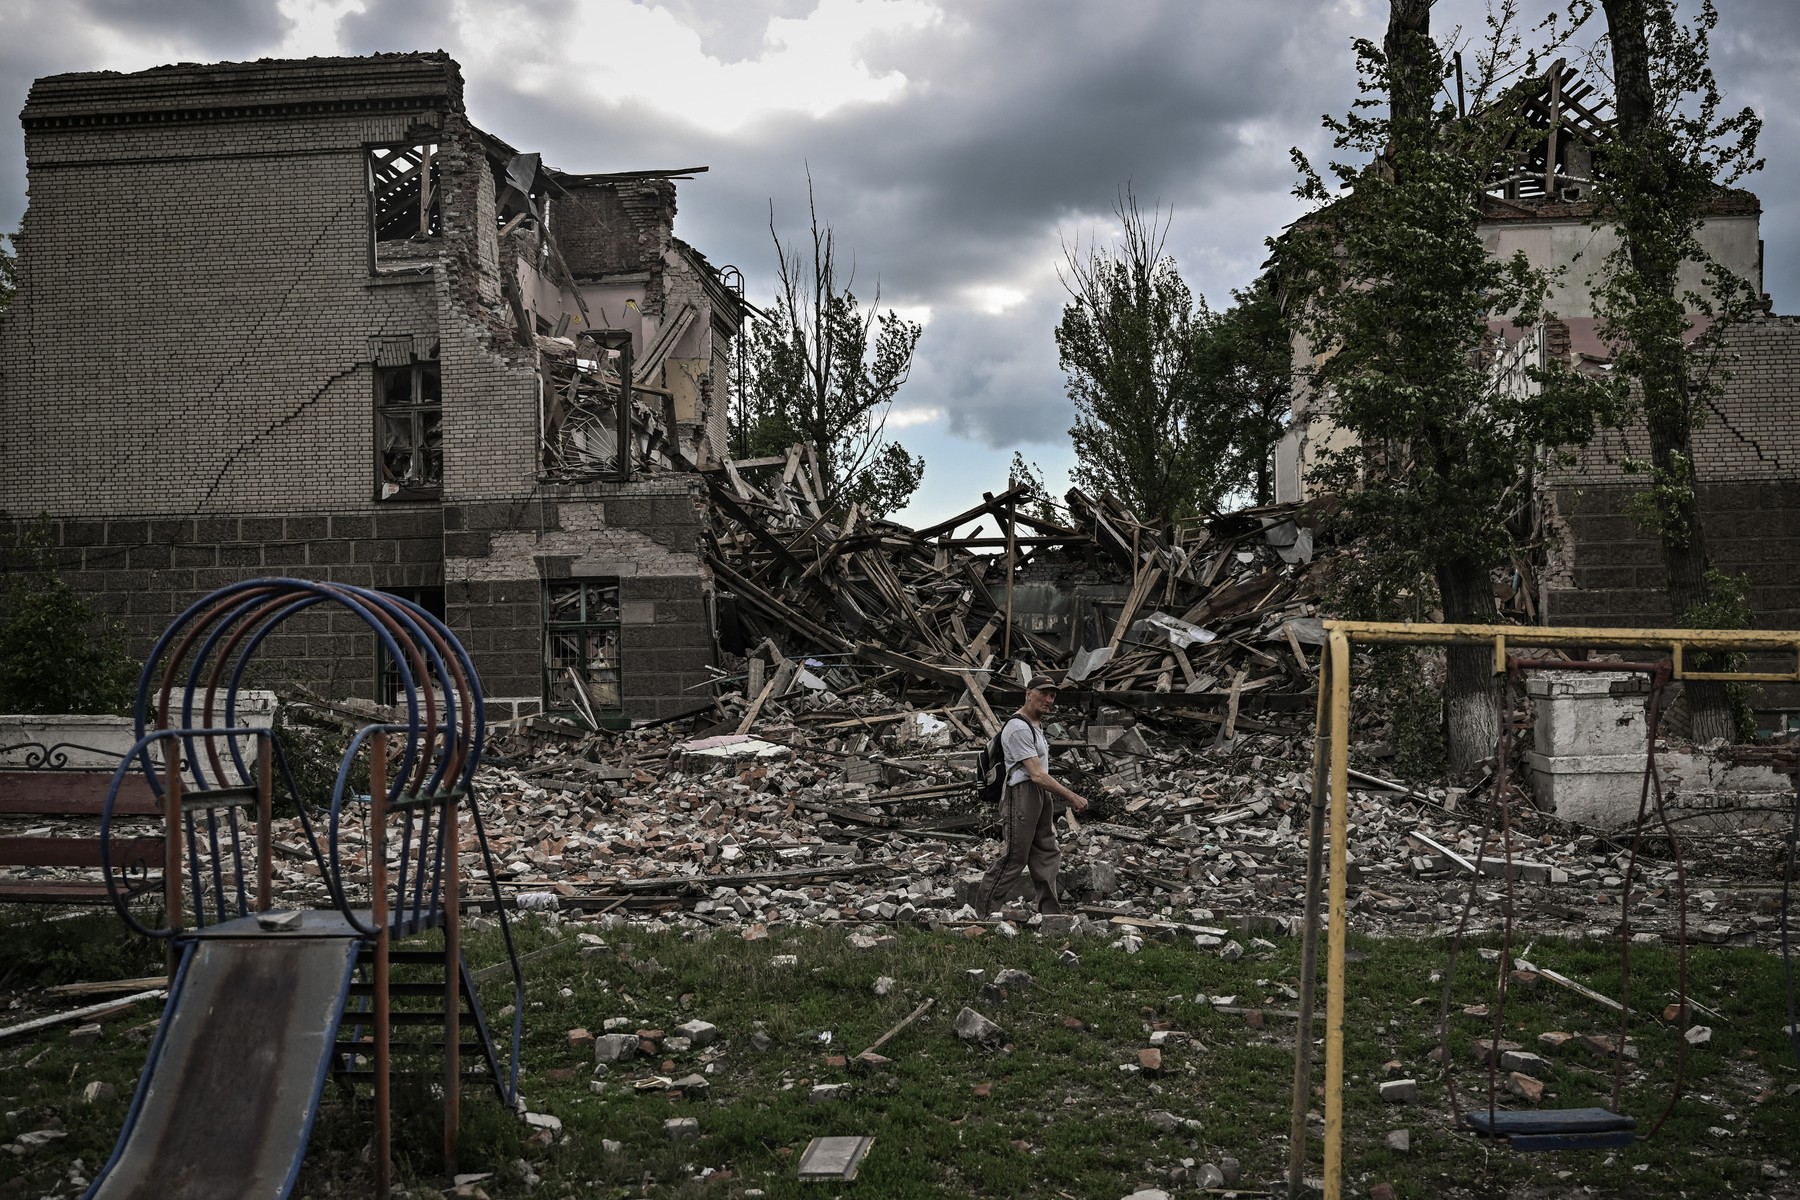 Razboi in Ucraina. Severodonetk, una dintre ultimele zone controlate de Kiev in Lugansk, este sub asaltul continuu al rusilor